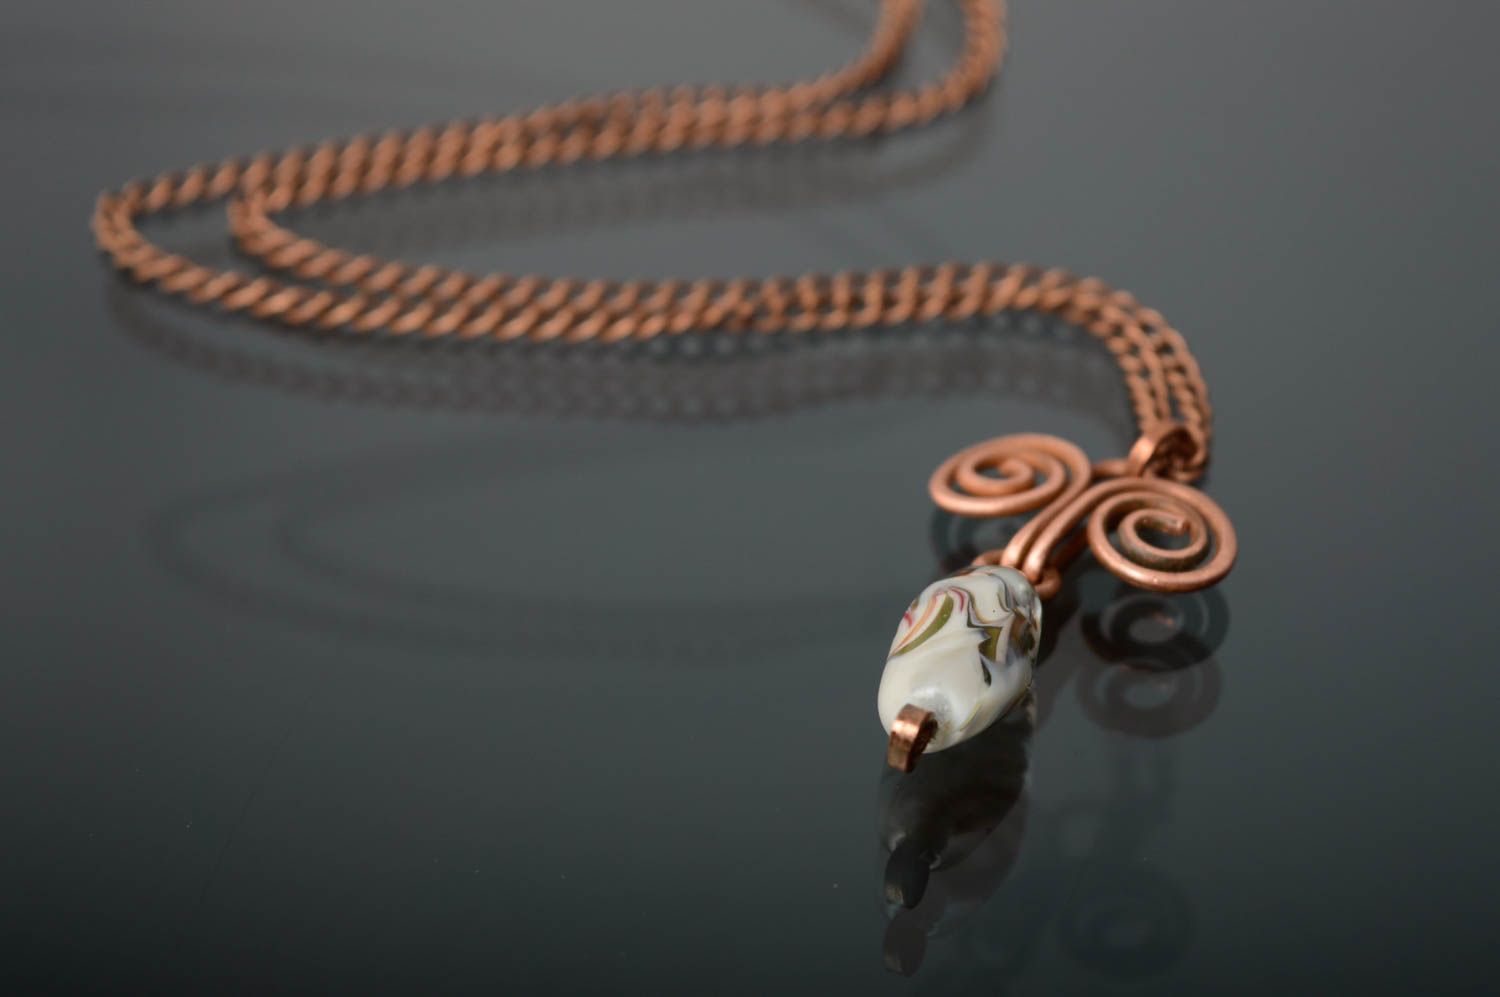 Copper pendant made using wire wrap technique photo 1